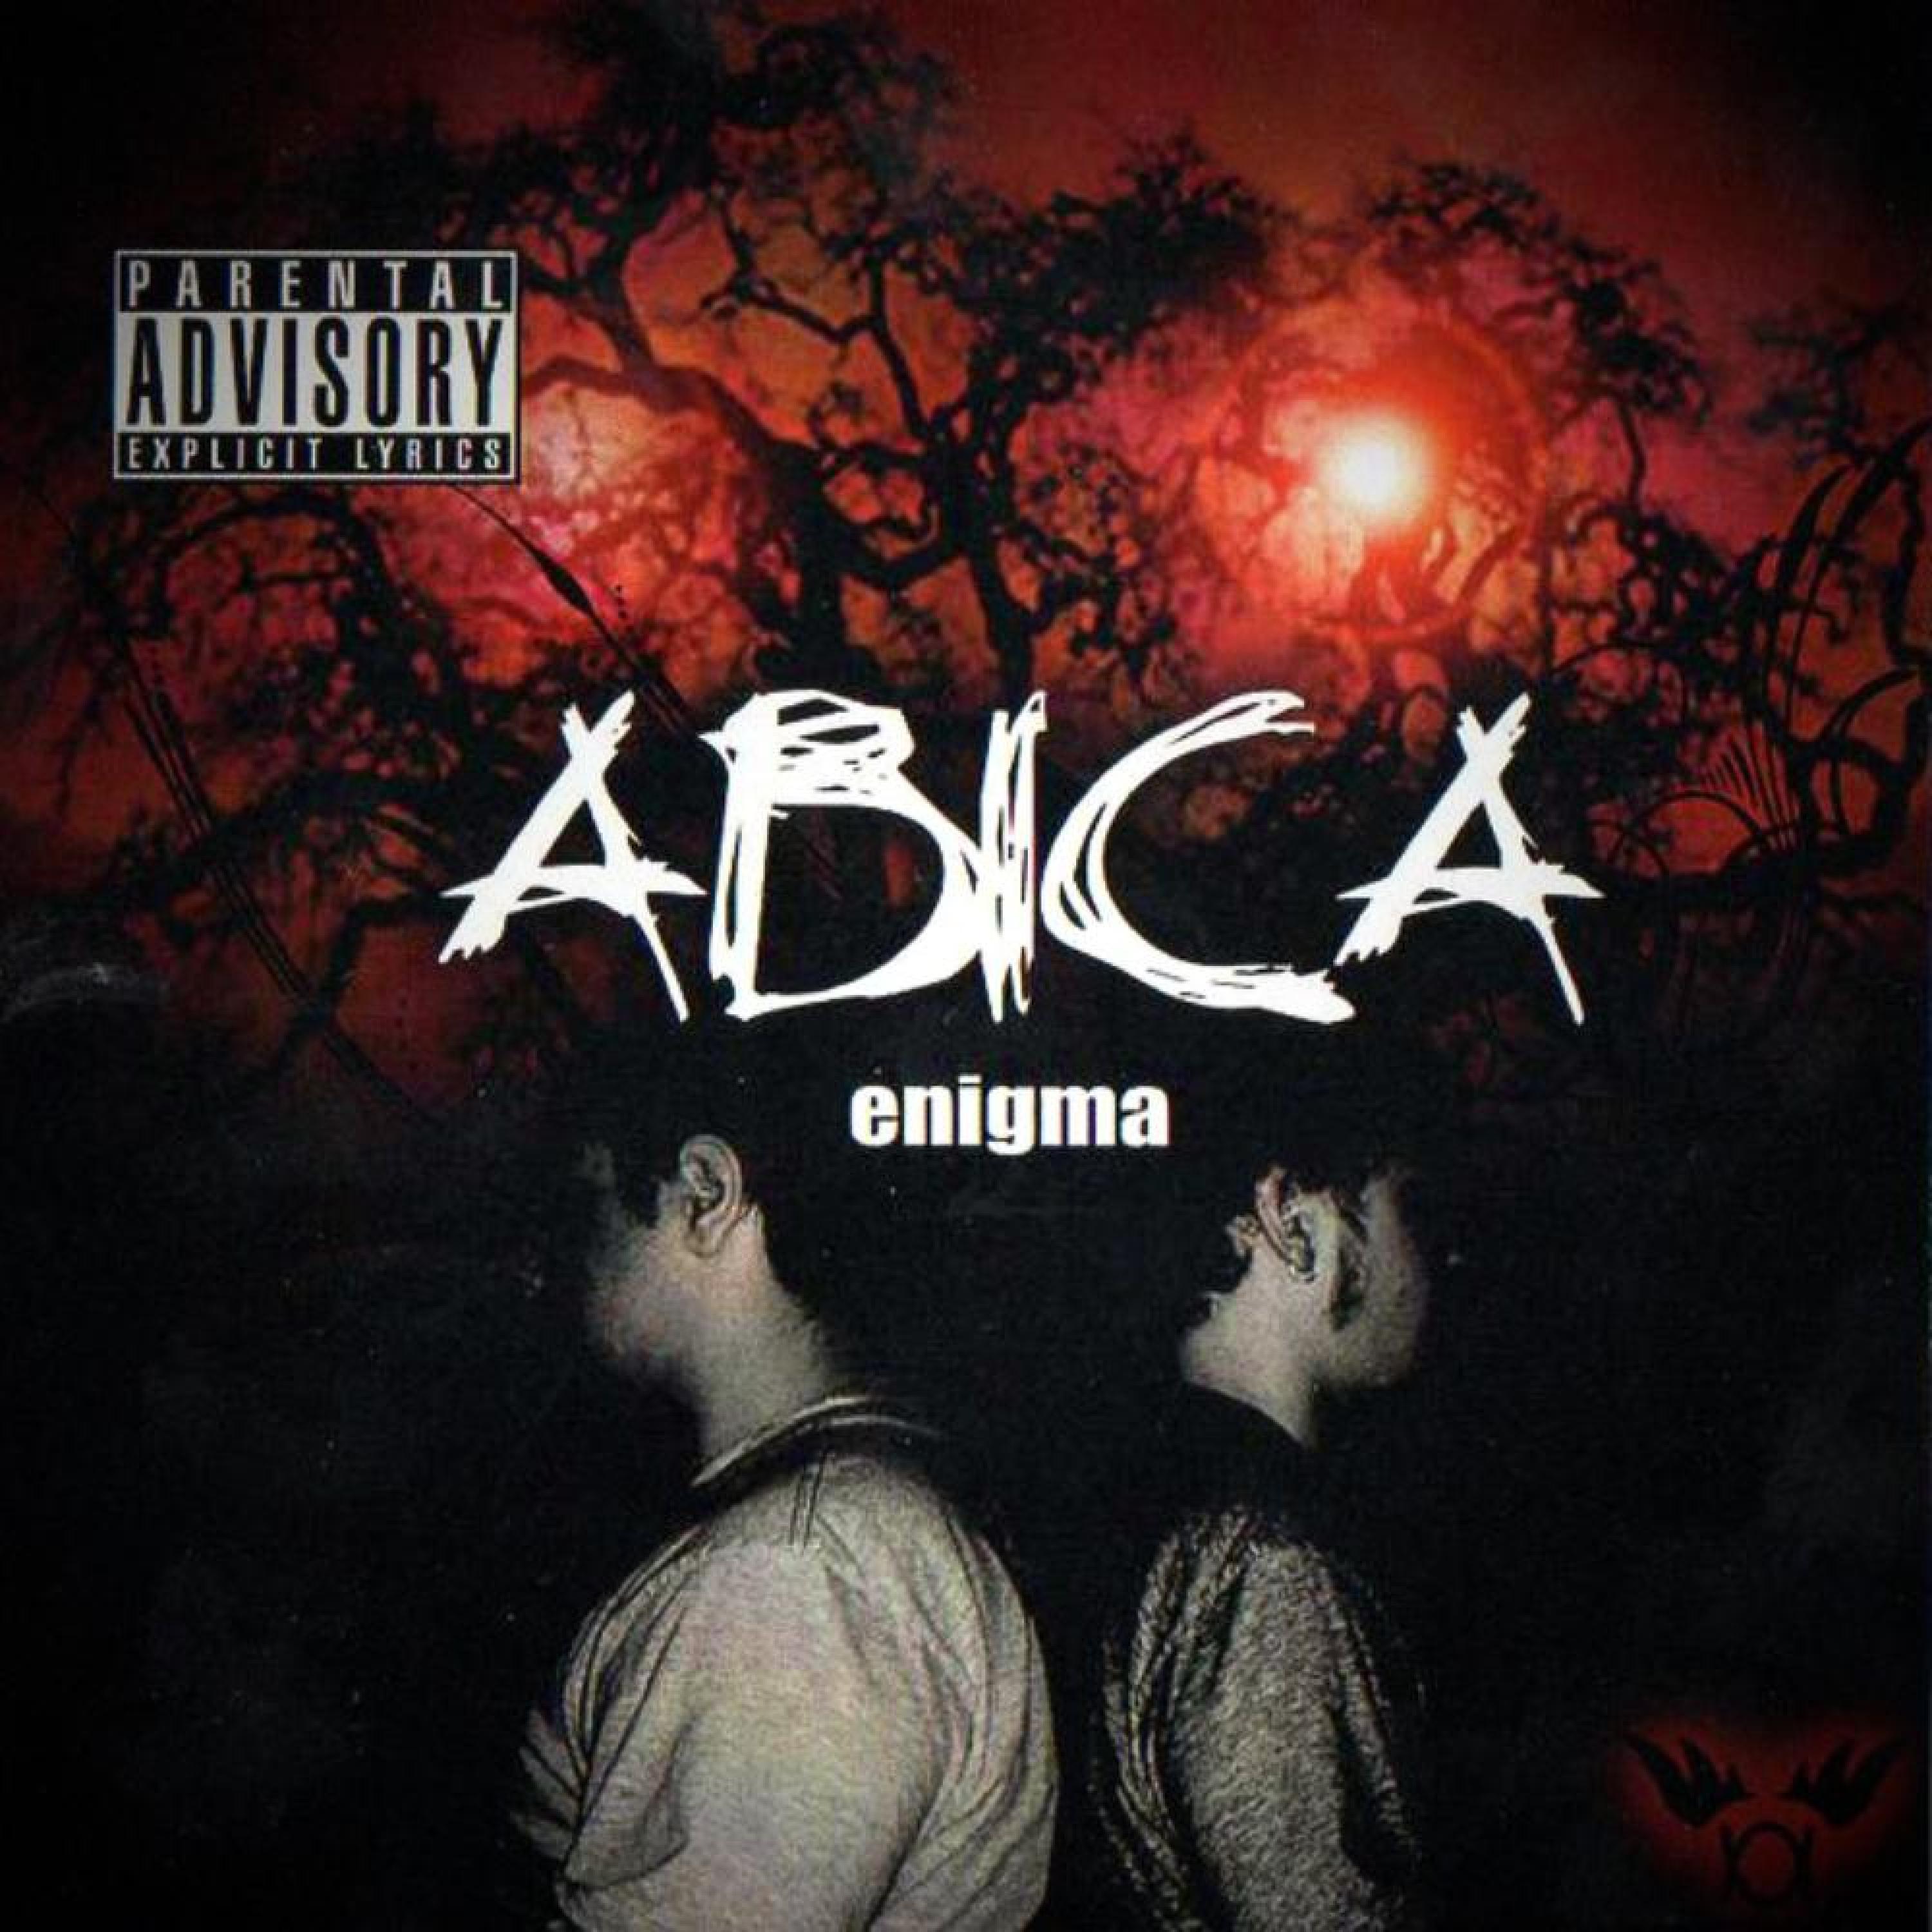 ABICA - When The Time Comes